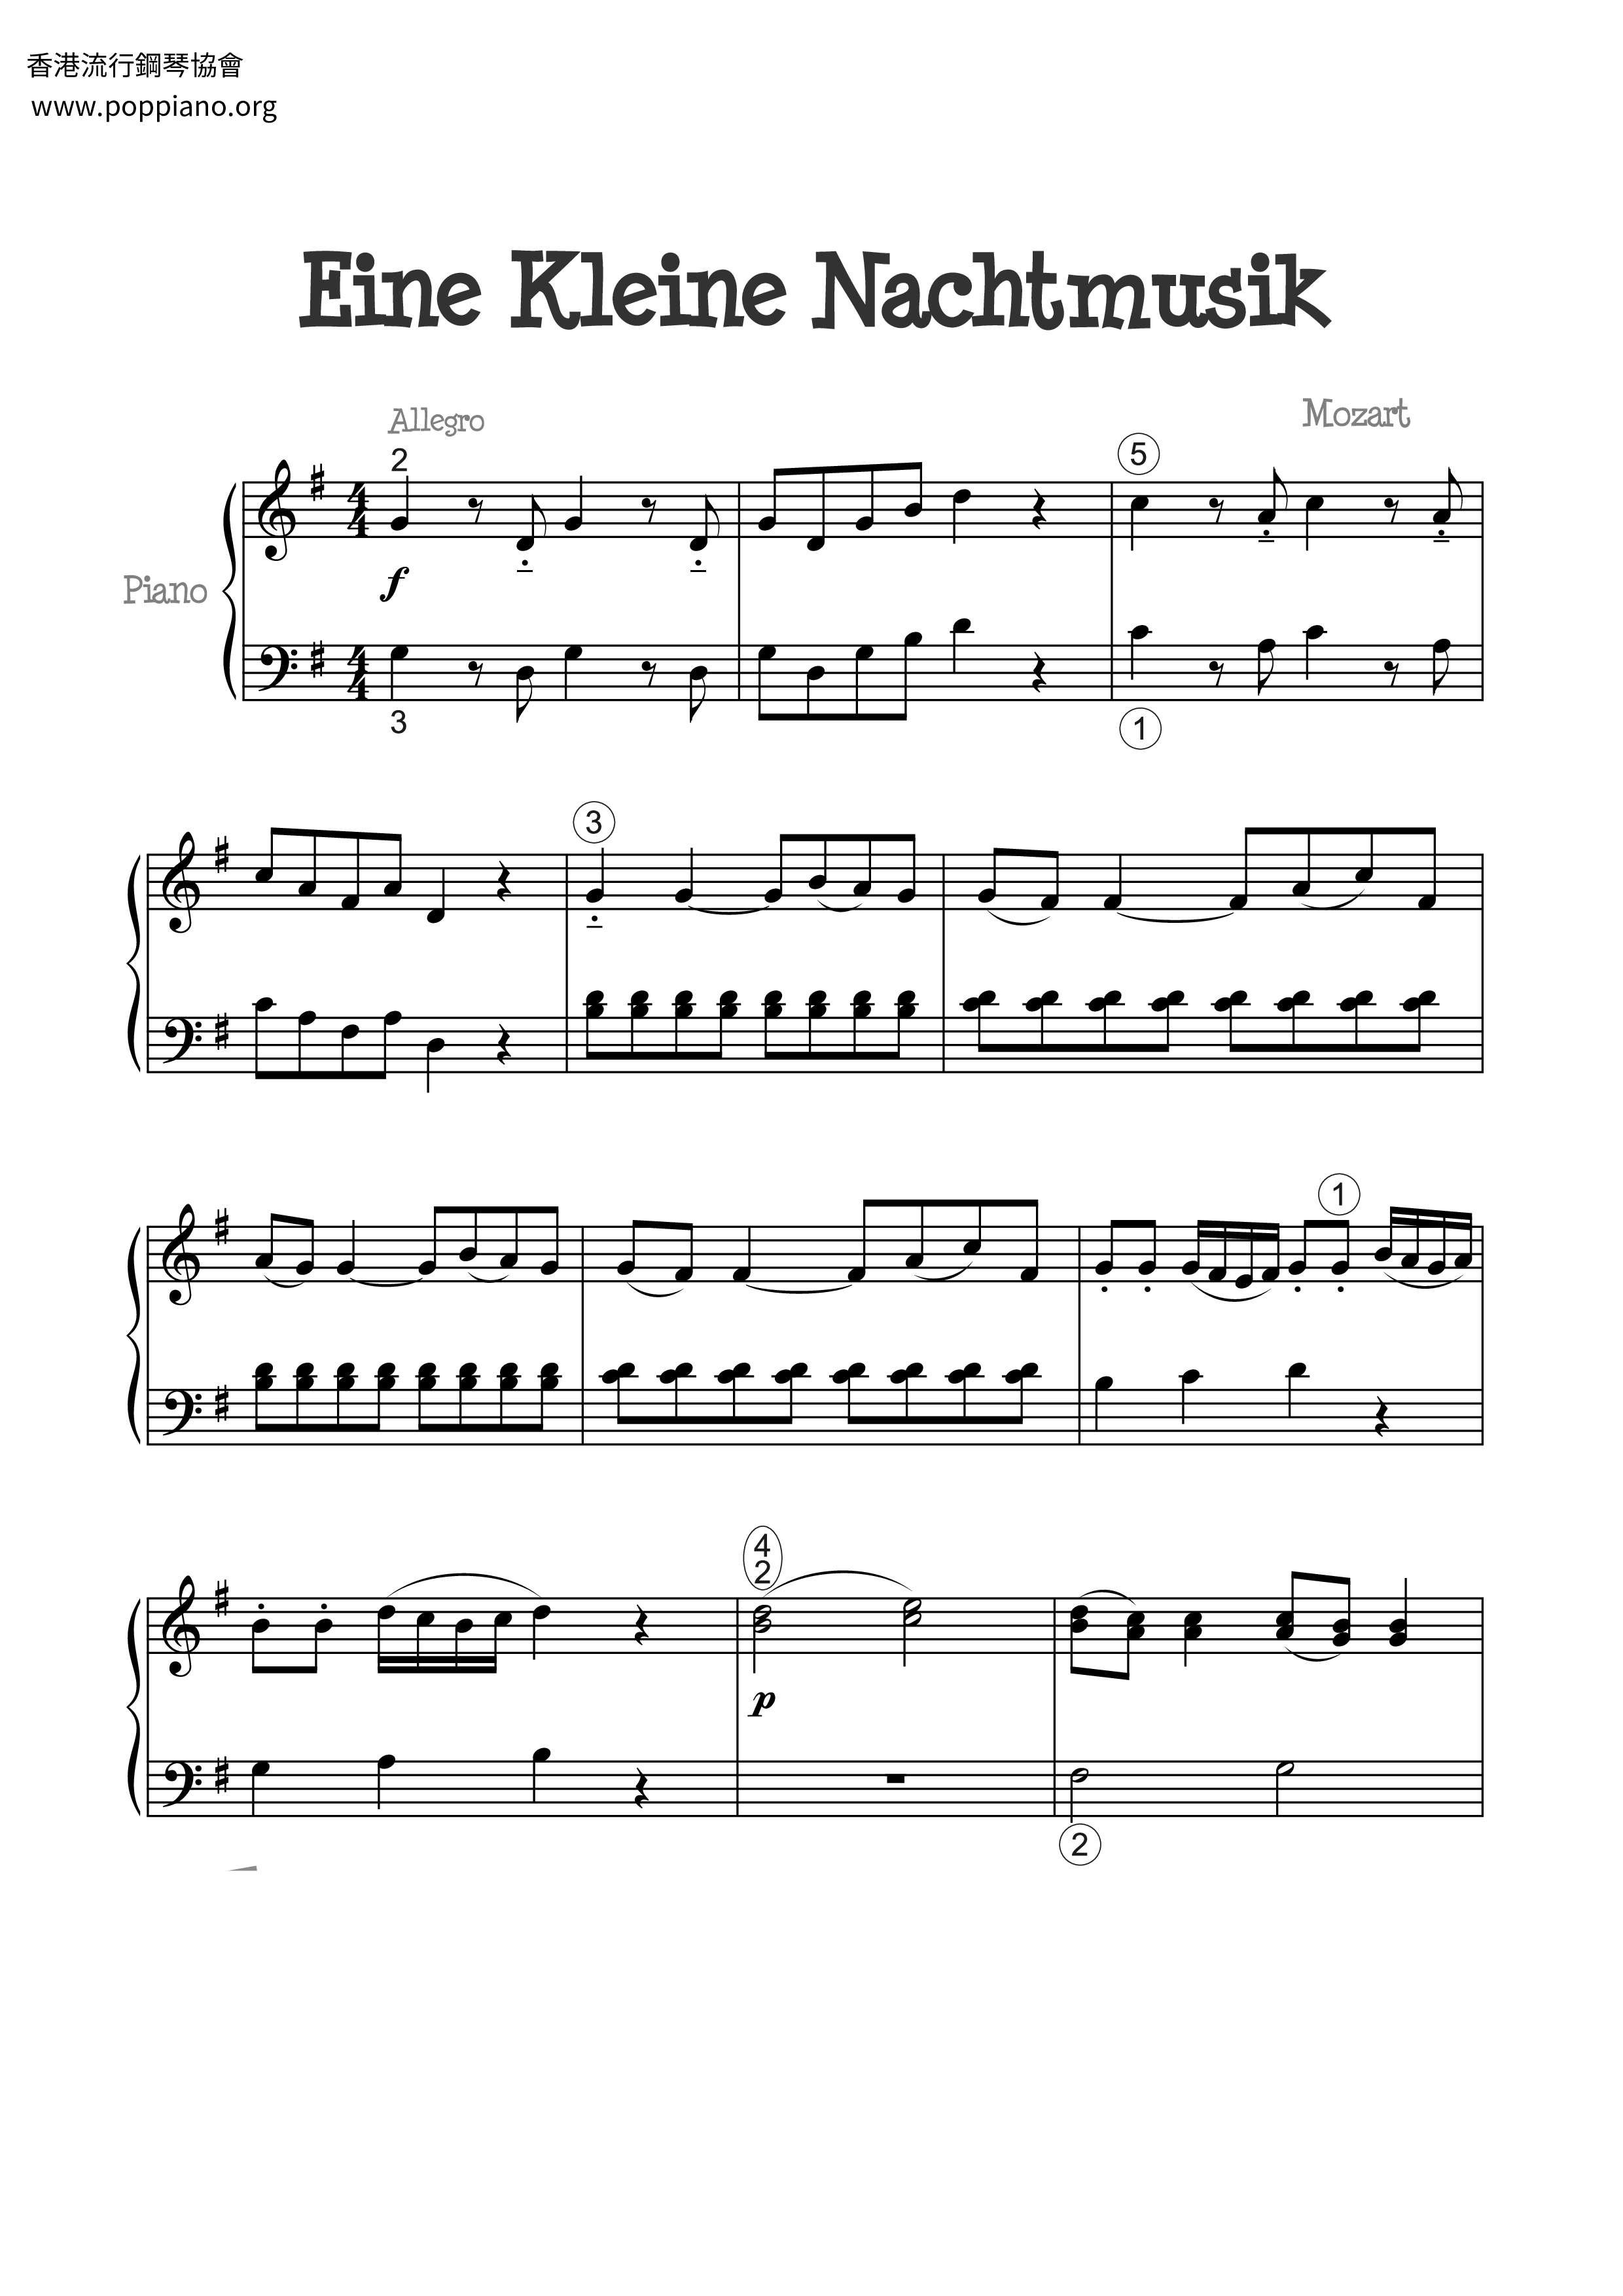 Serenade No. 13 in G Major, K. 525, Eine kleine Nachtmusik: I. Allegroピアノ譜